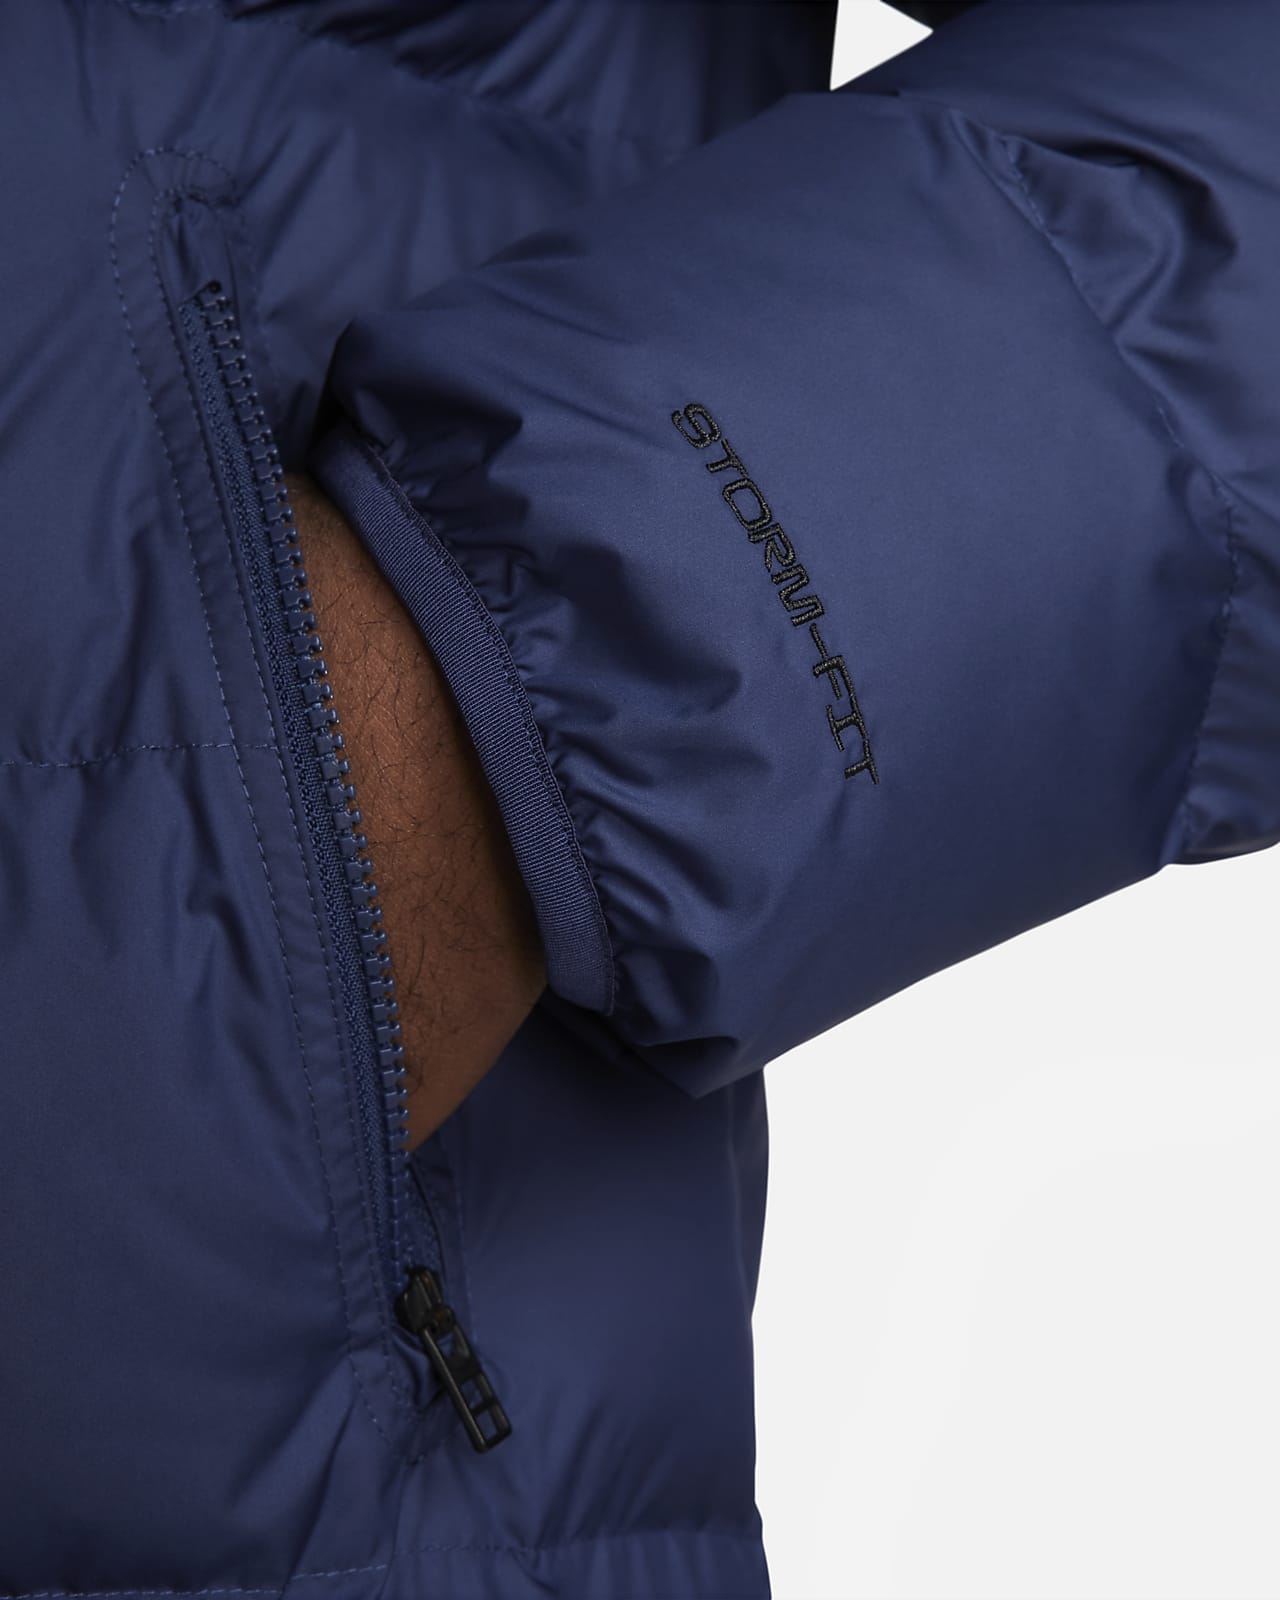 Nike Windrunner PrimaLoft® Men's Storm-FIT Hooded Parka Jacket.